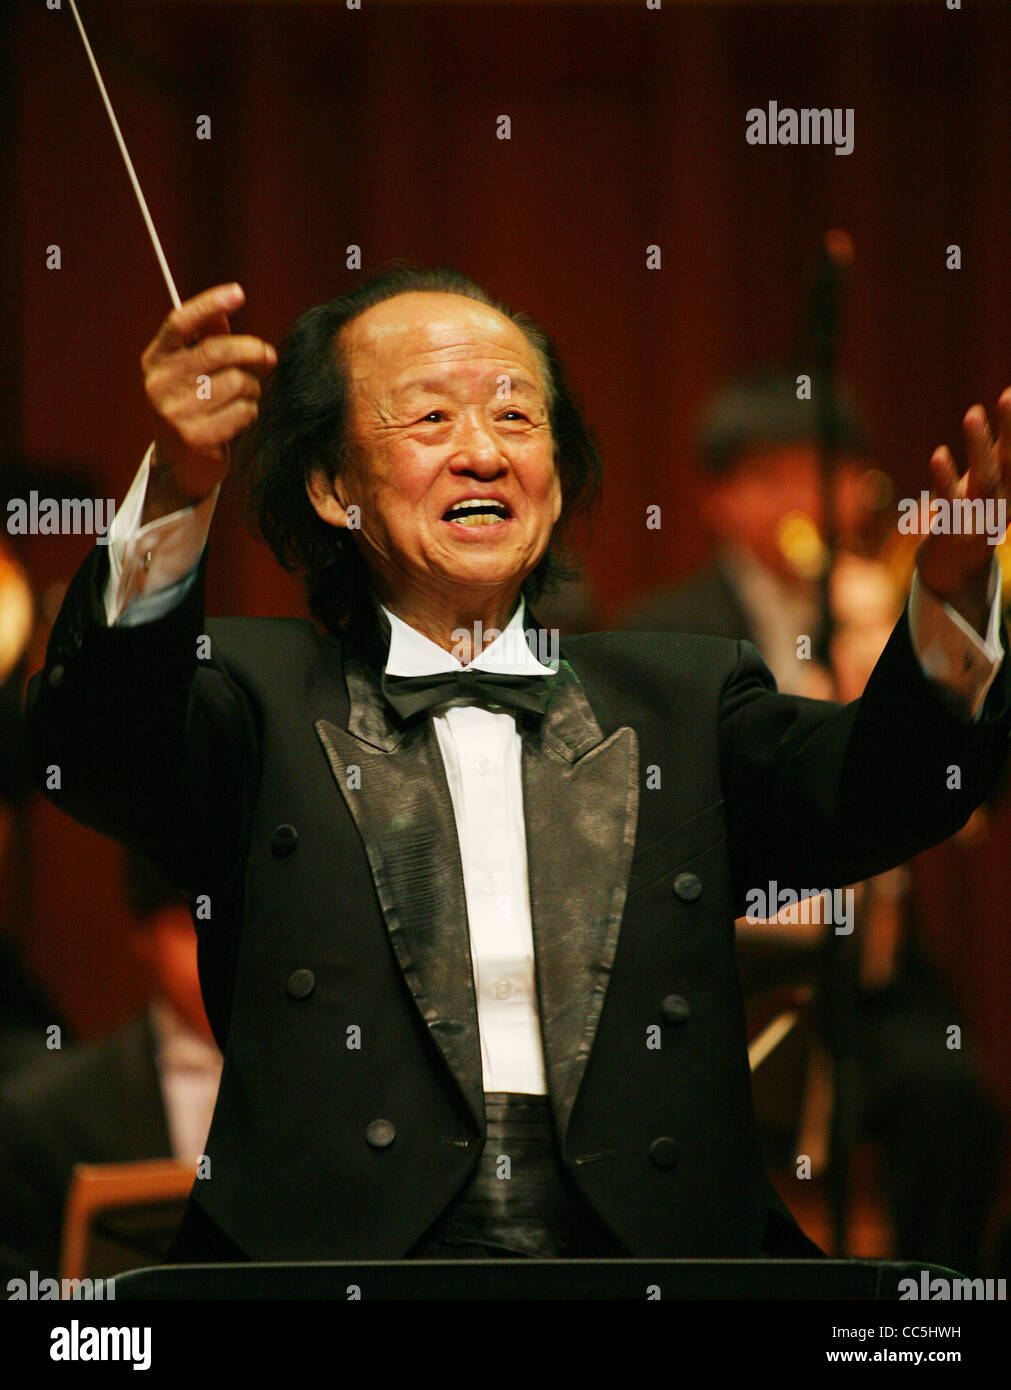 Música clásica conductor levanta los brazos, Beijing, China Foto de stock